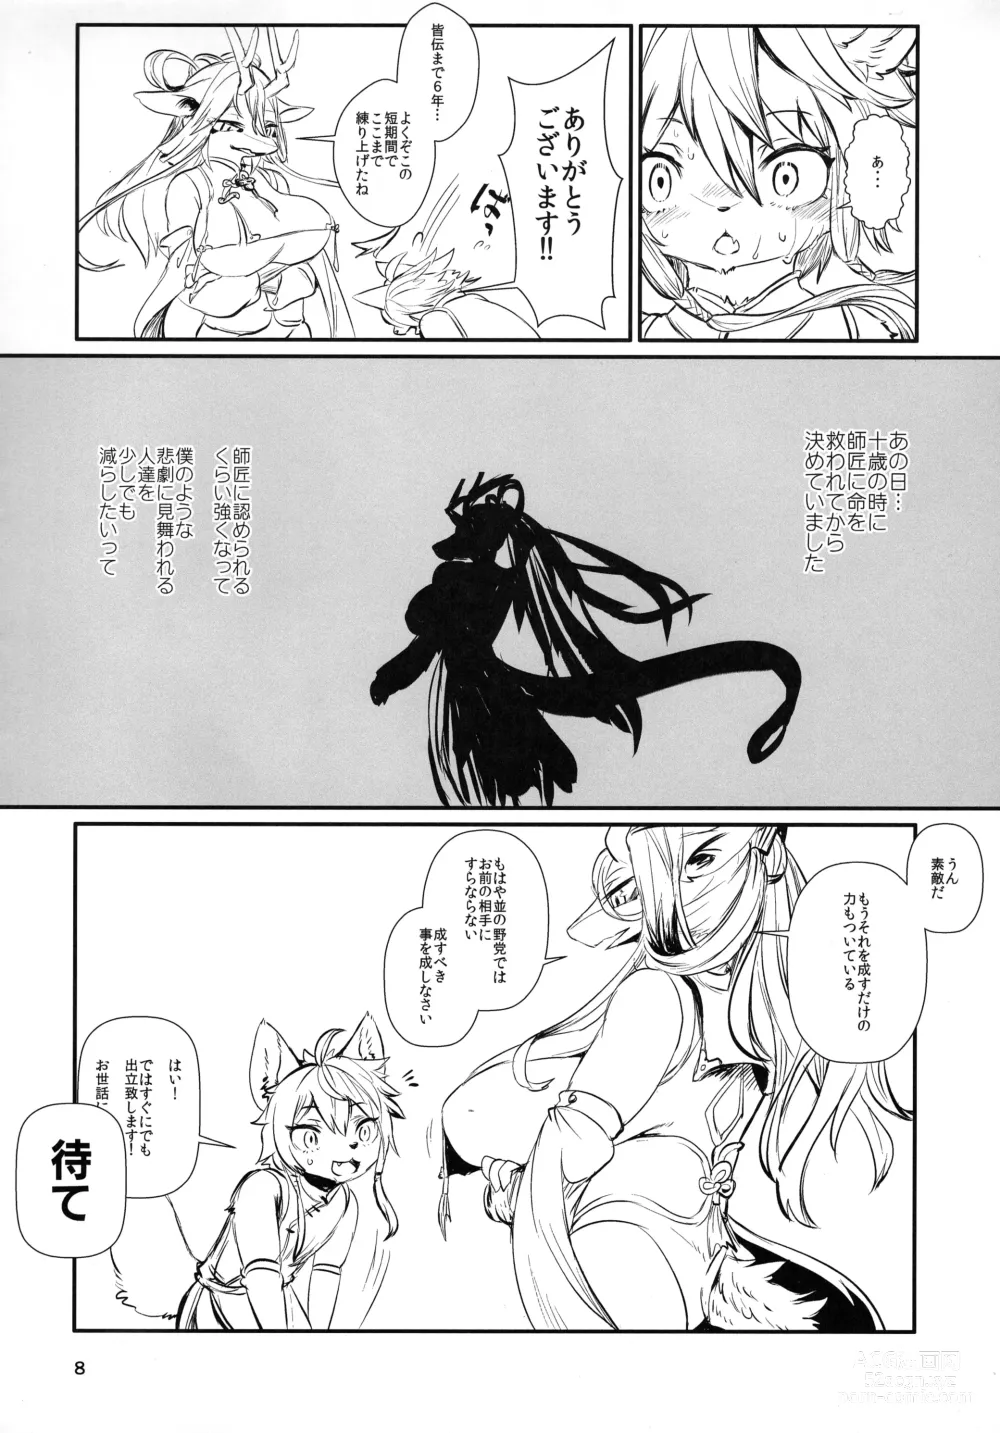 Page 8 of doujinshi Kyosei Yukoku ni Kaoru